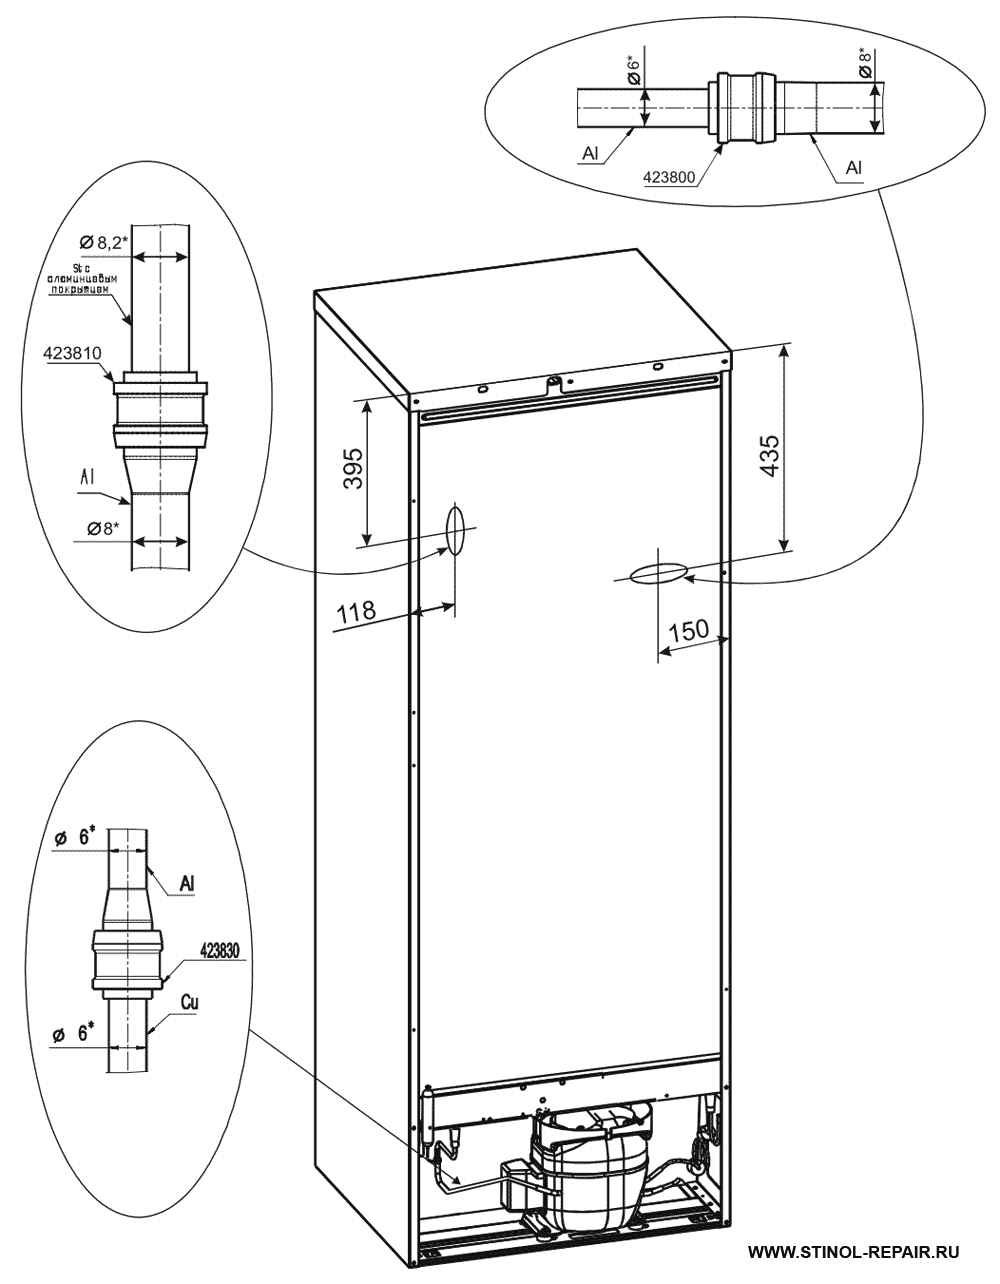 Расположение локринговых соединений холодильника Стинол-256Q - второй вариант.